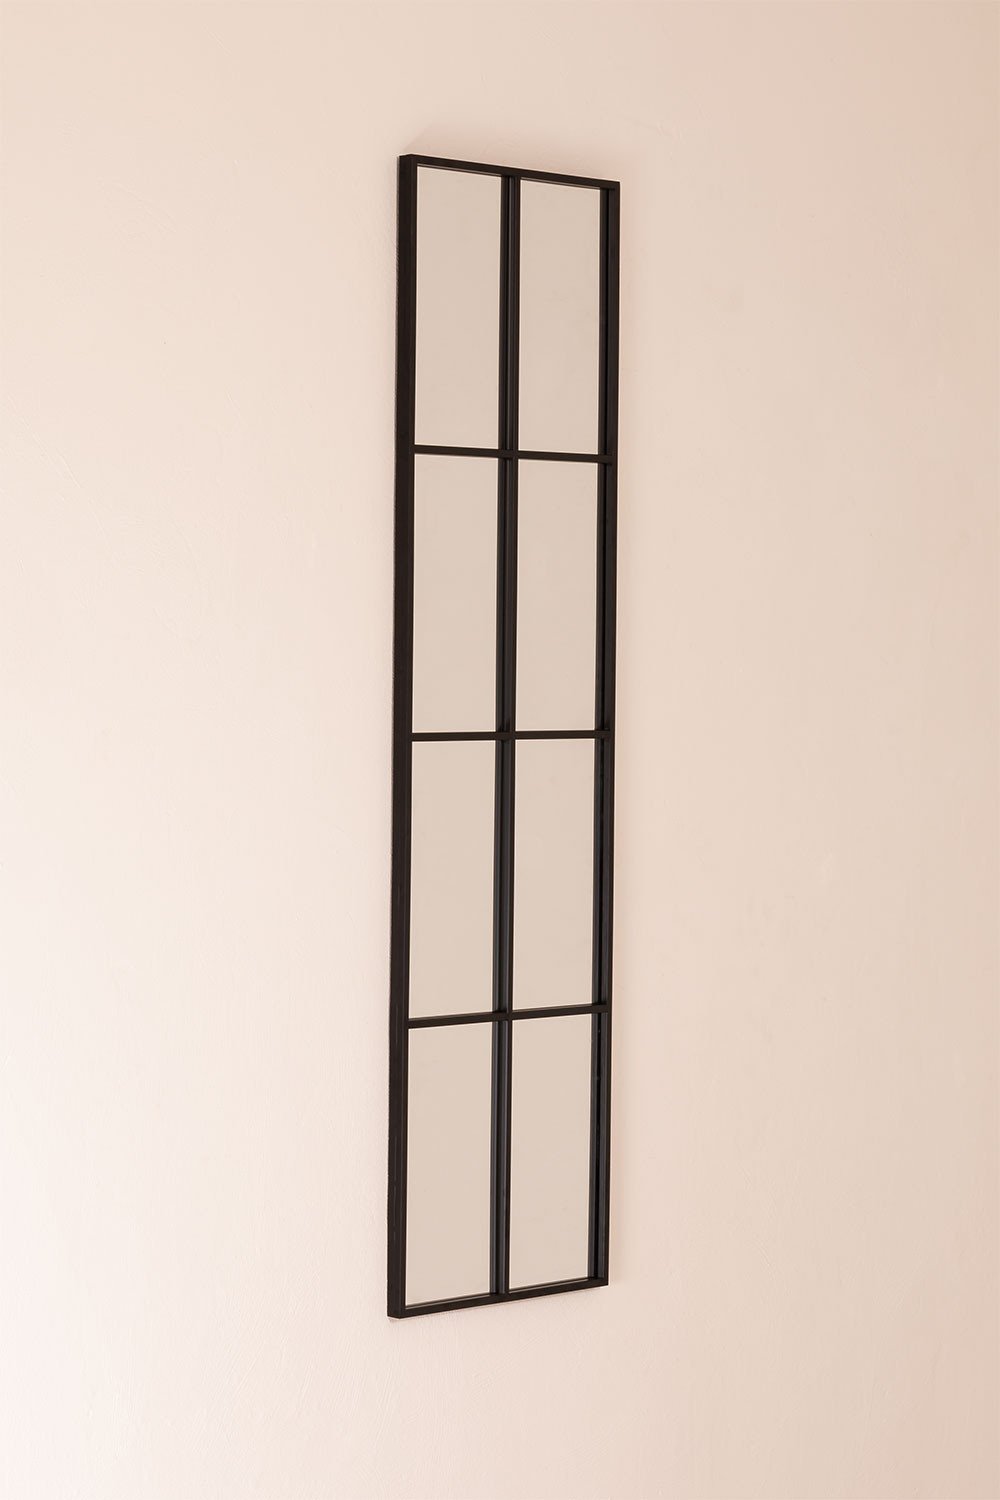 Metalen wandspiegel met raameffect (132x38 cm) Rania, galerij beeld 2